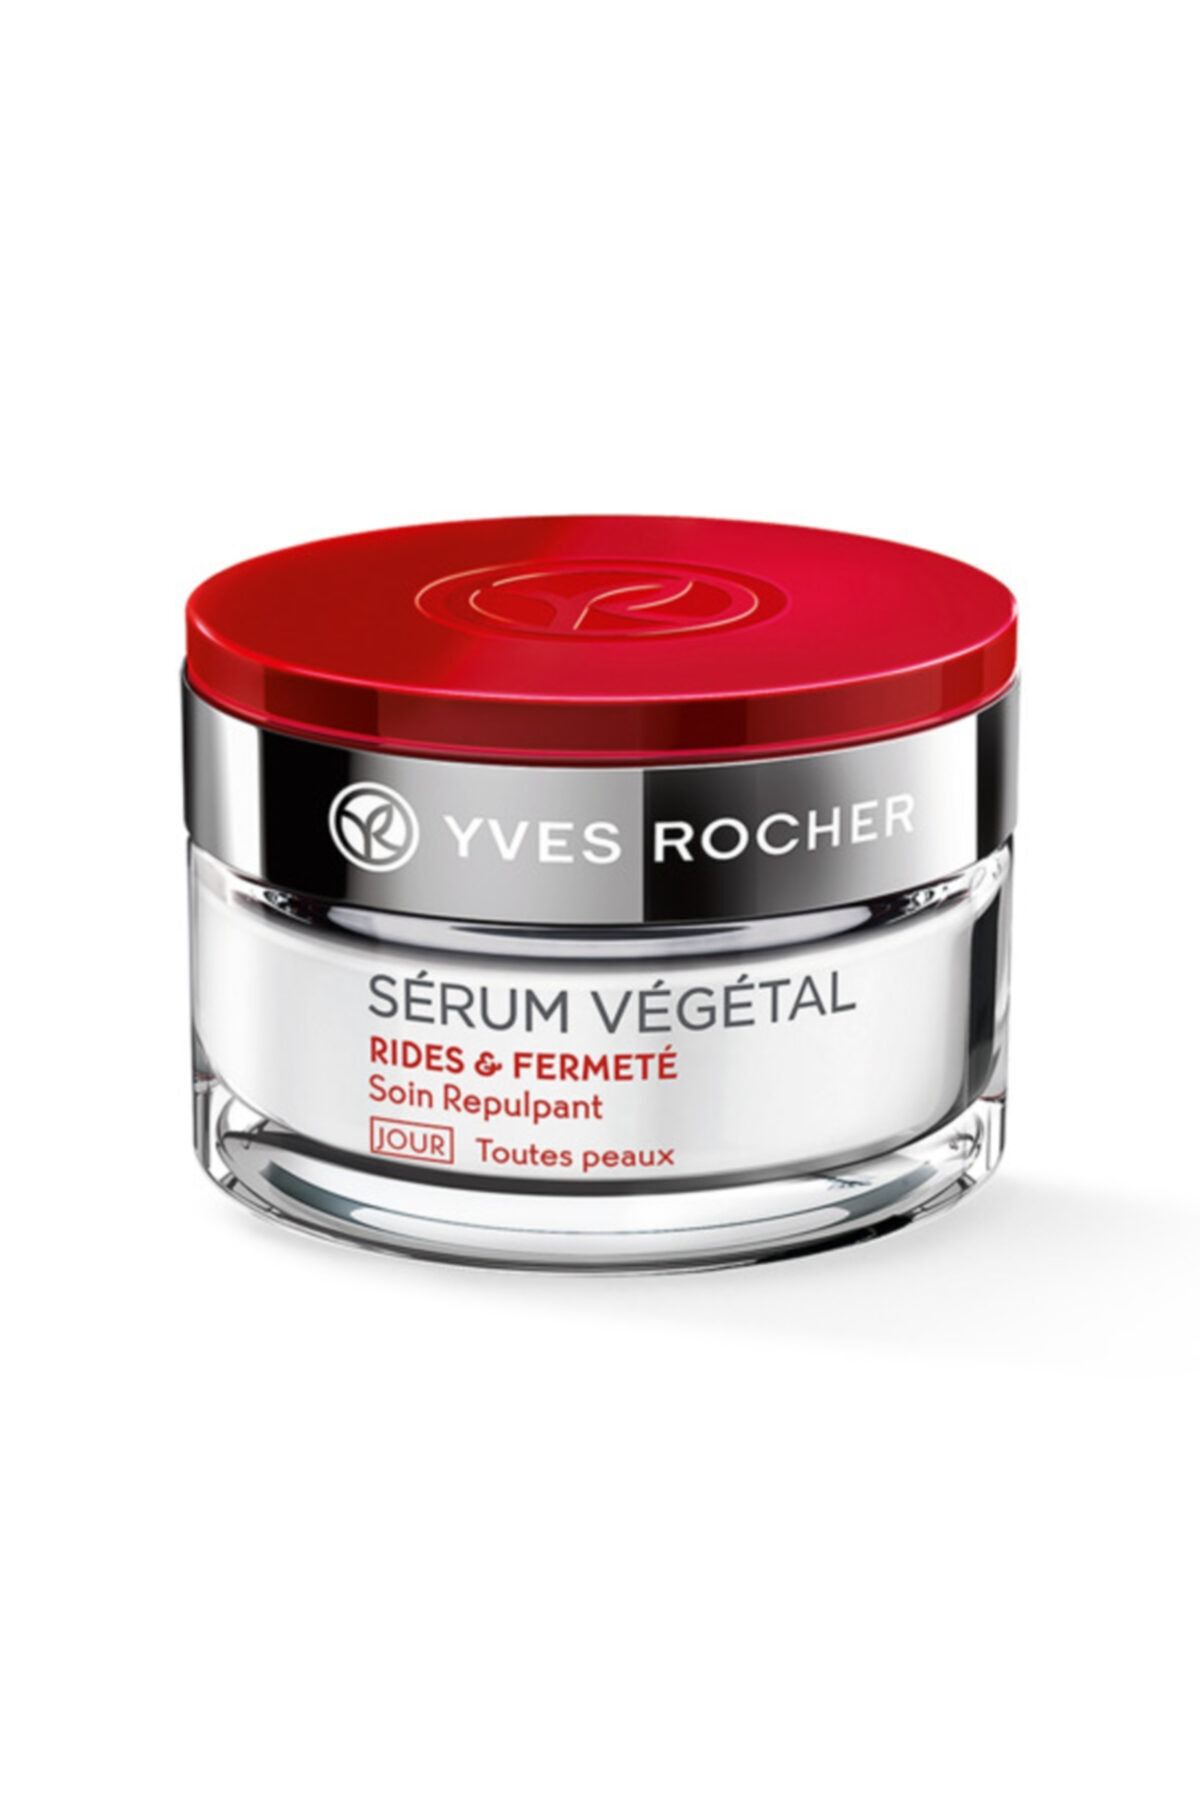 Yves Rocher Serum Vegetal -Kırışık Karşıtı Sıkılaştırıcı Gündüz Kremi 50 Ml